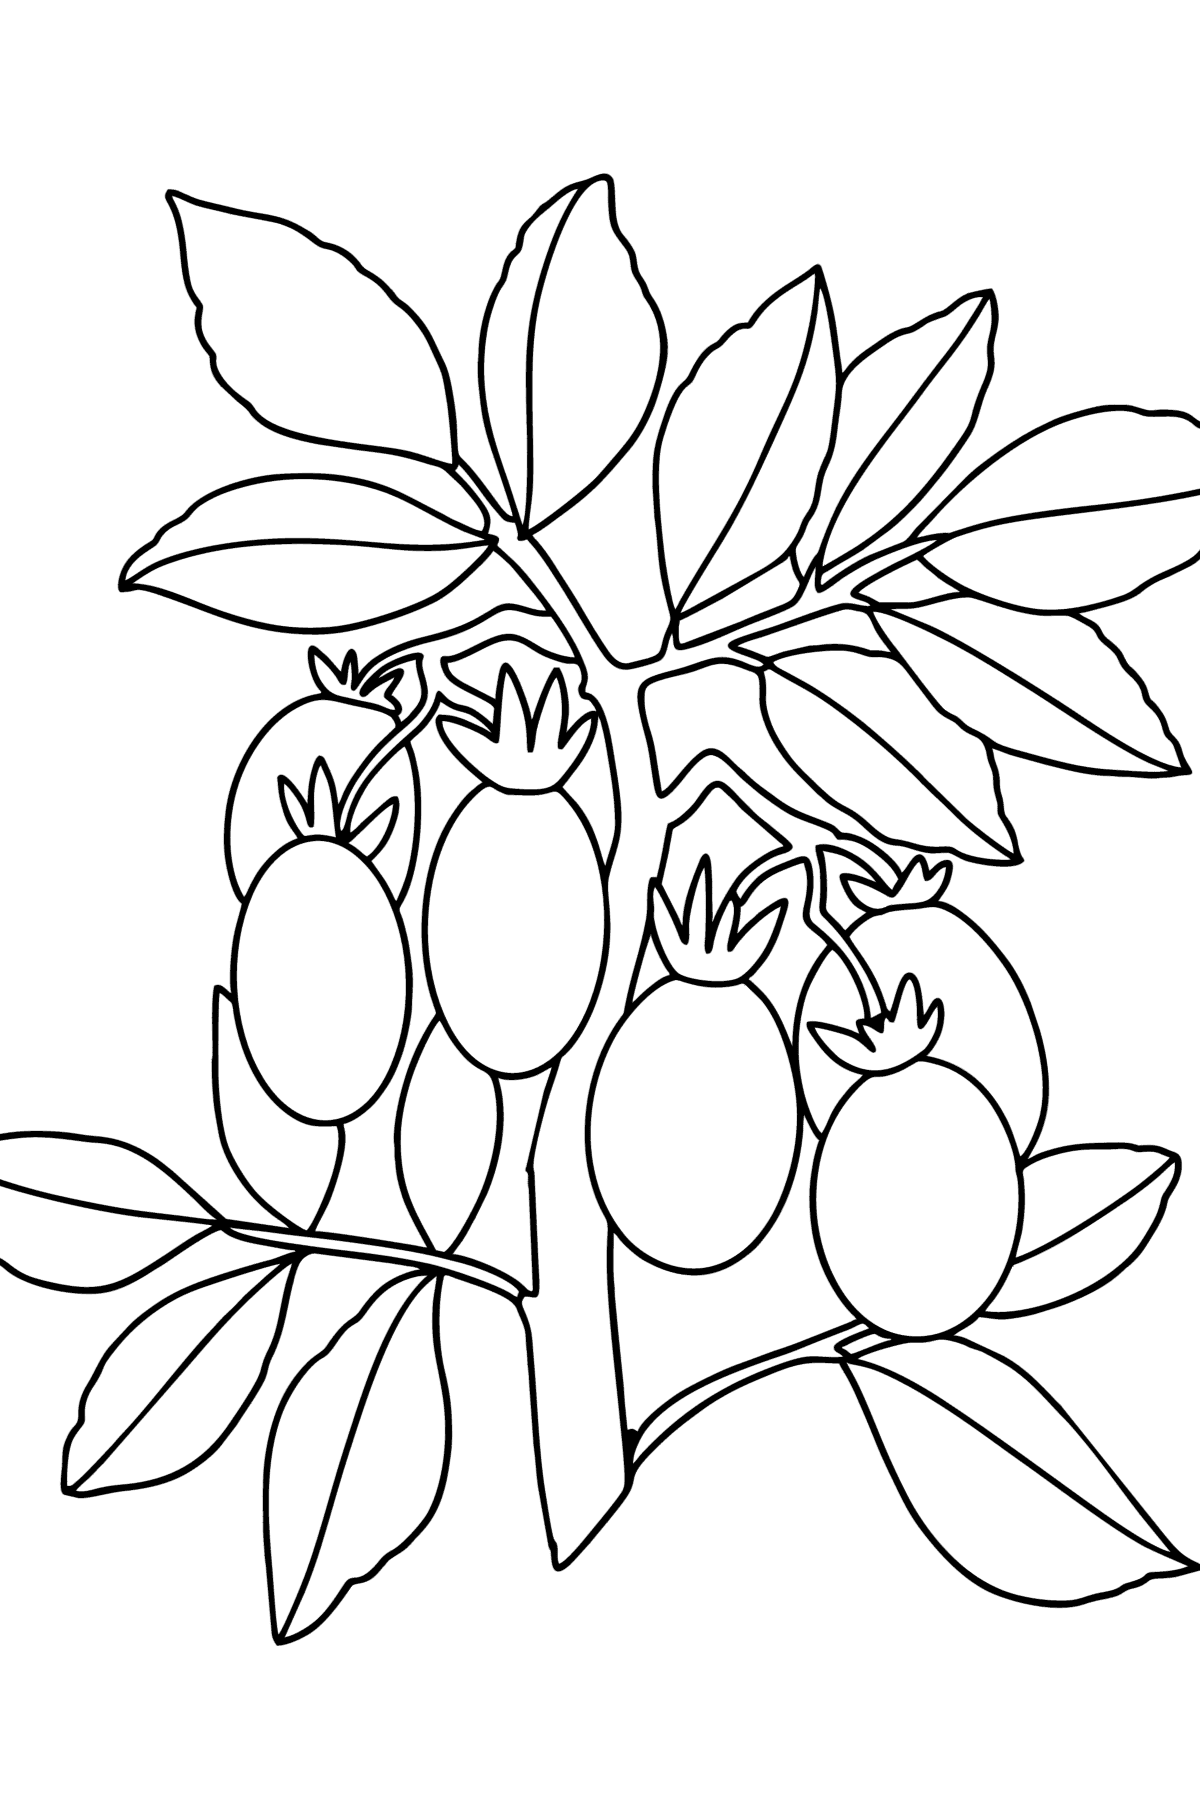 Tegning til fargelegging Tomater vokser - Tegninger til fargelegging for barn